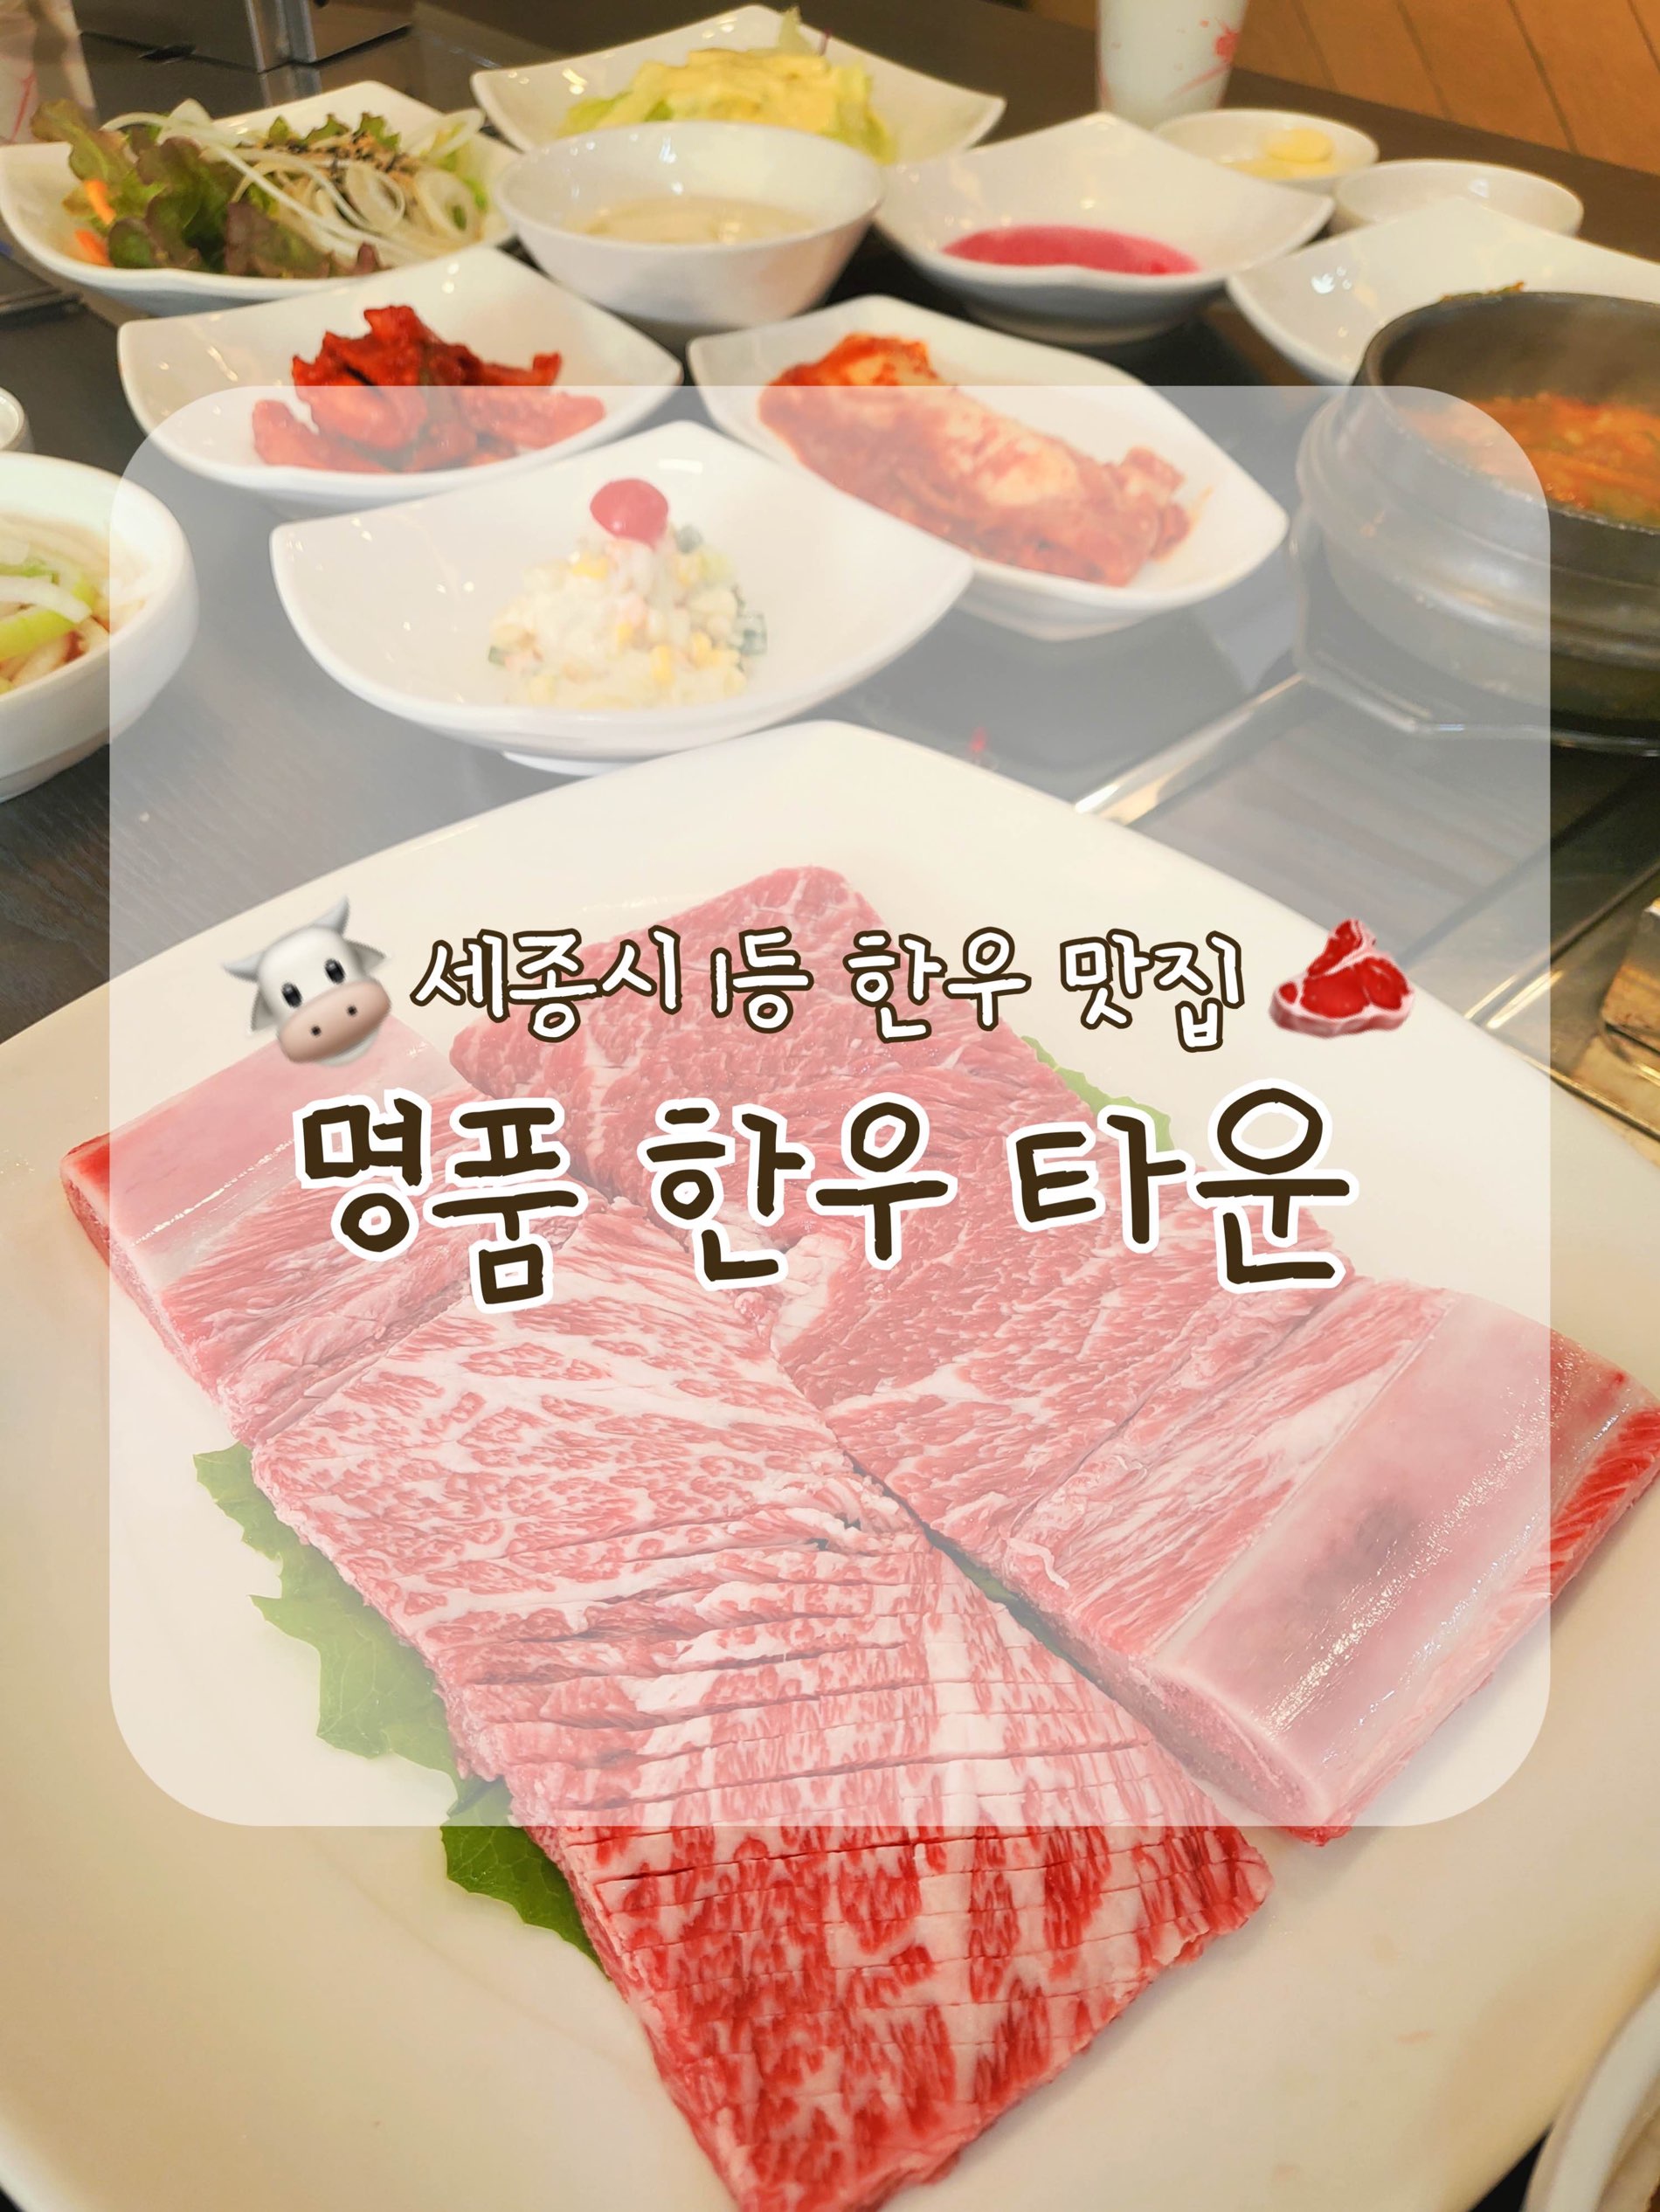 世宗第一名韩牛餐厅,名牌韩牛镇🥩